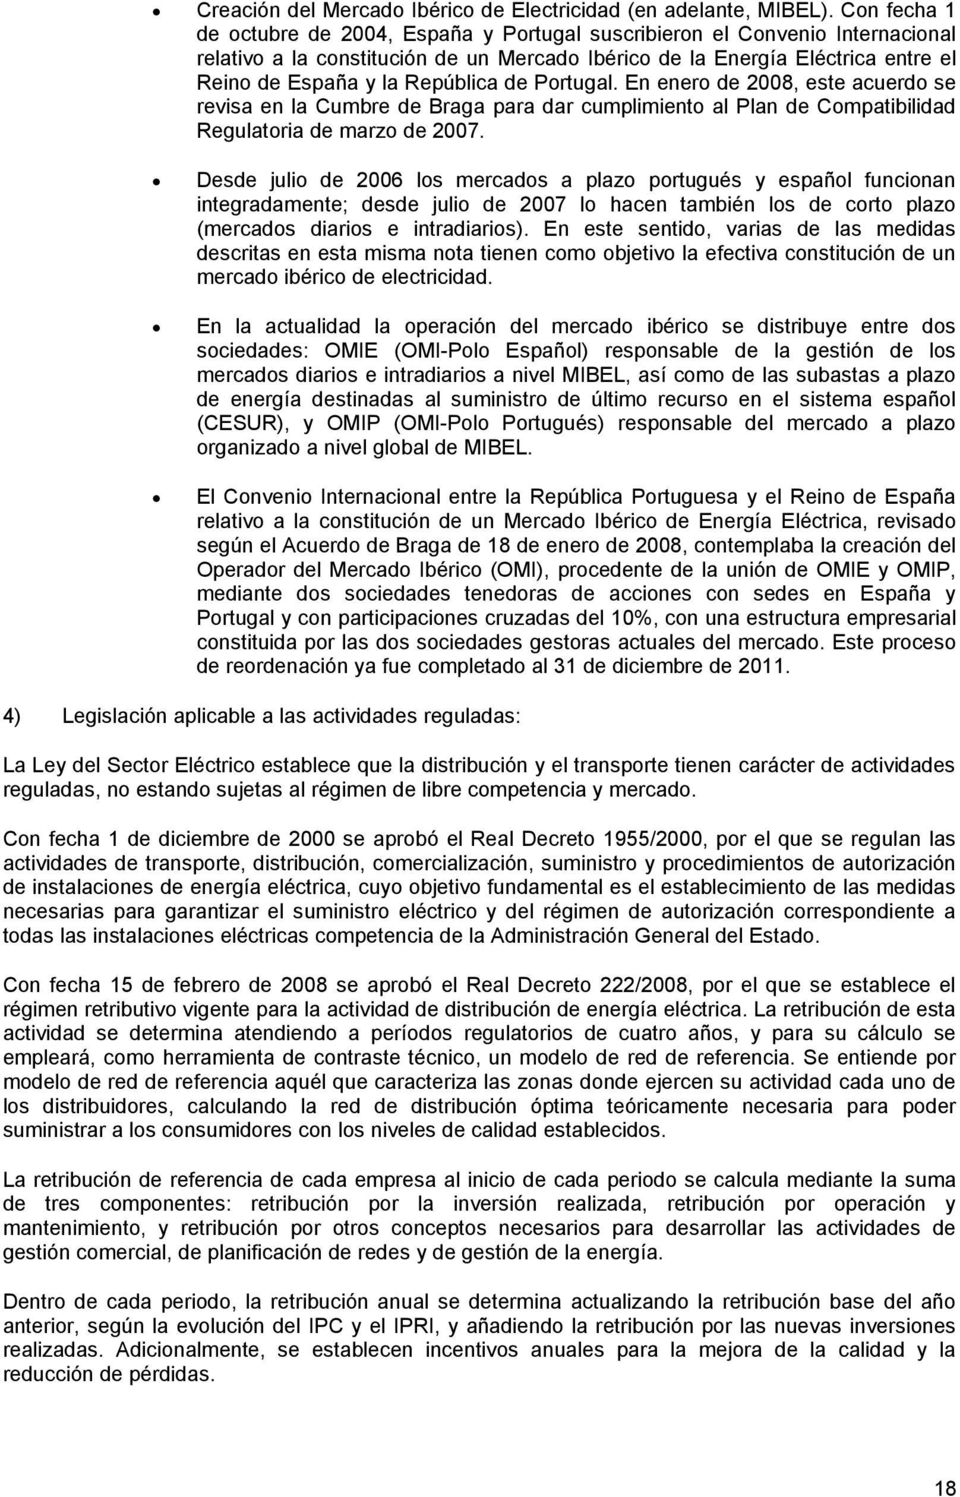 República de Portugal. En enero de 2008, este acuerdo se revisa en la Cumbre de Braga para dar cumplimiento al Plan de Compatibilidad Regulatoria de marzo de 2007.